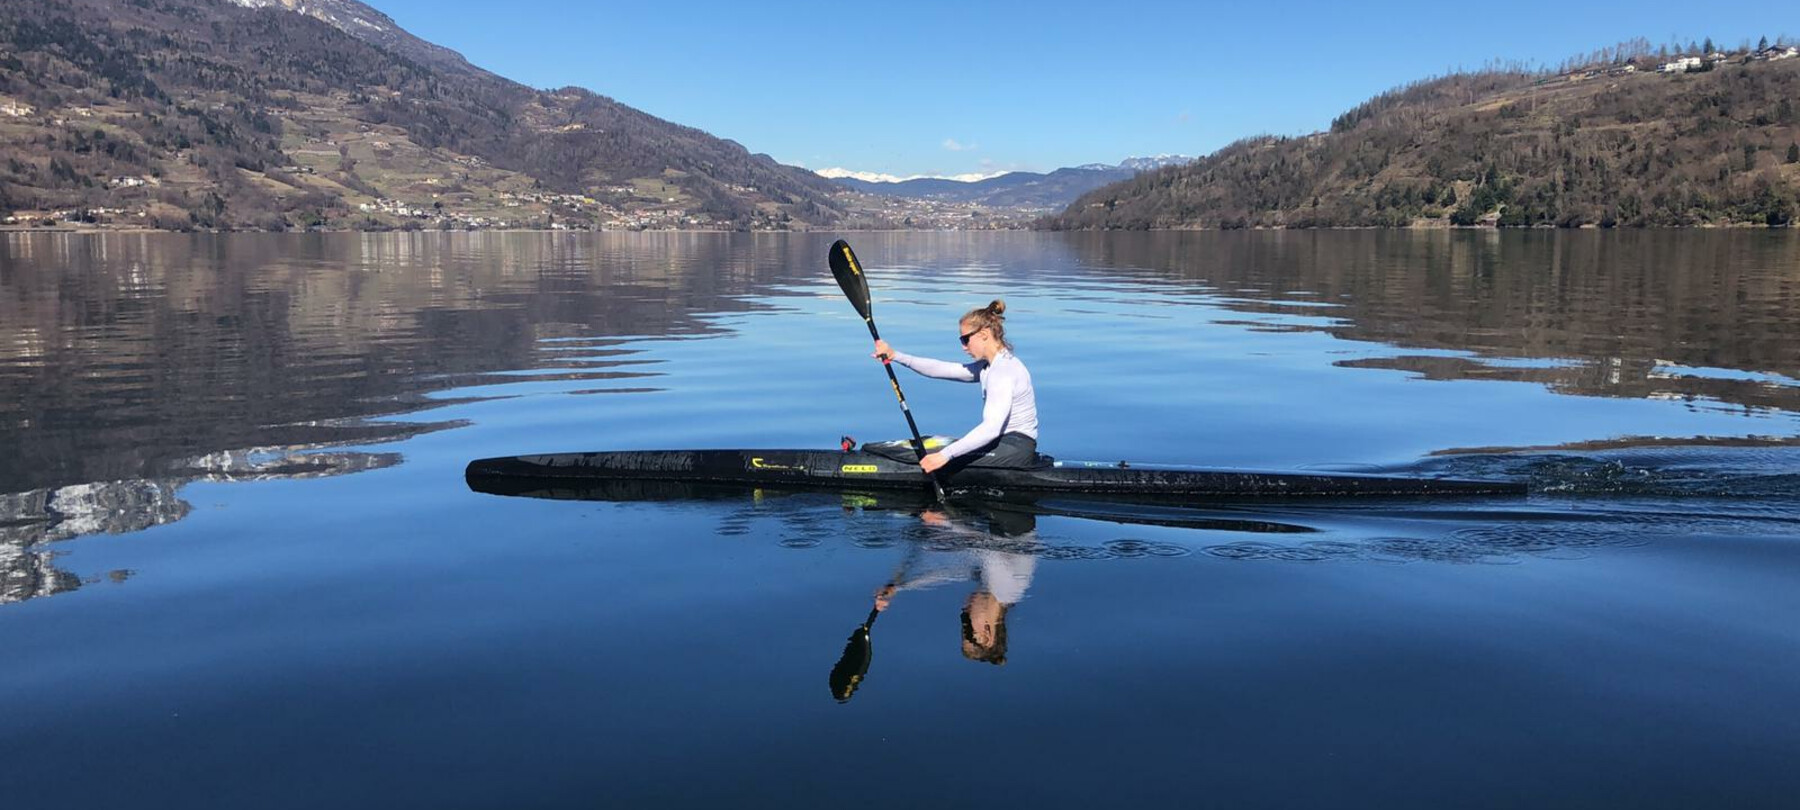 De meren van Trentino: het verhaal van Matteo en het Lido di Caldonazzo